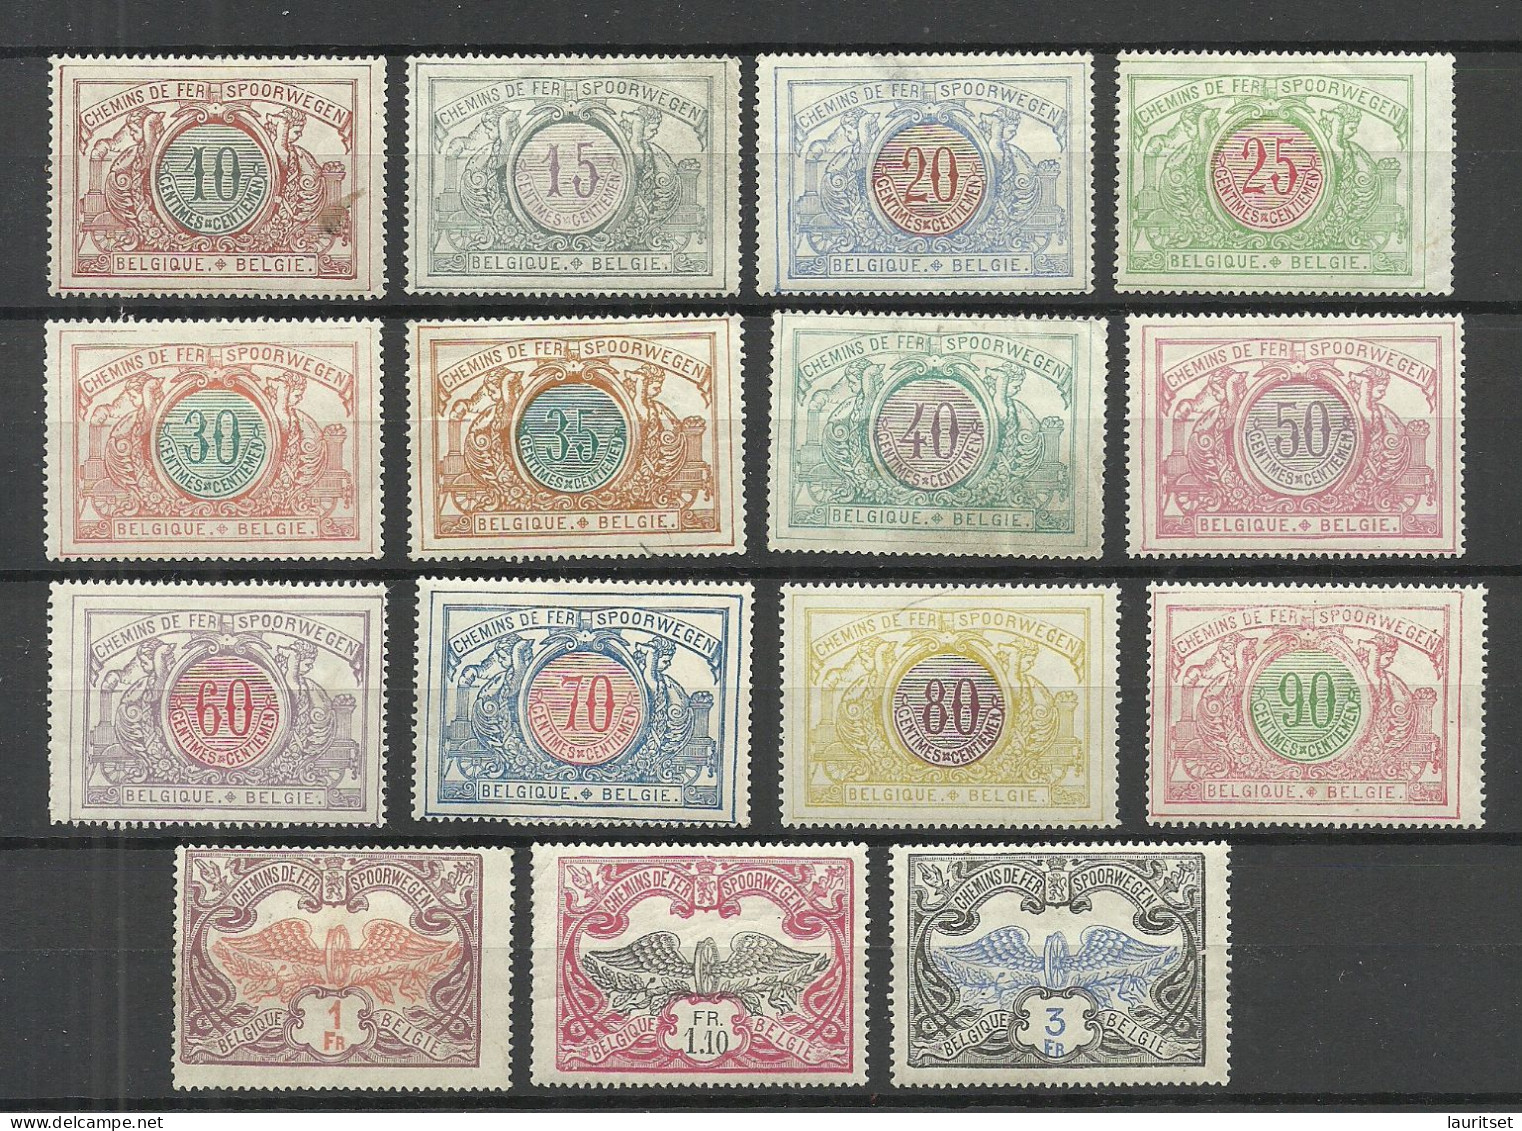 BELGIEN Belgium Belgique 1902-1906 Michel 28 - 42 * Railway Packet Stamps Eisenbahnpaketmarken NB! READ! - Postfris